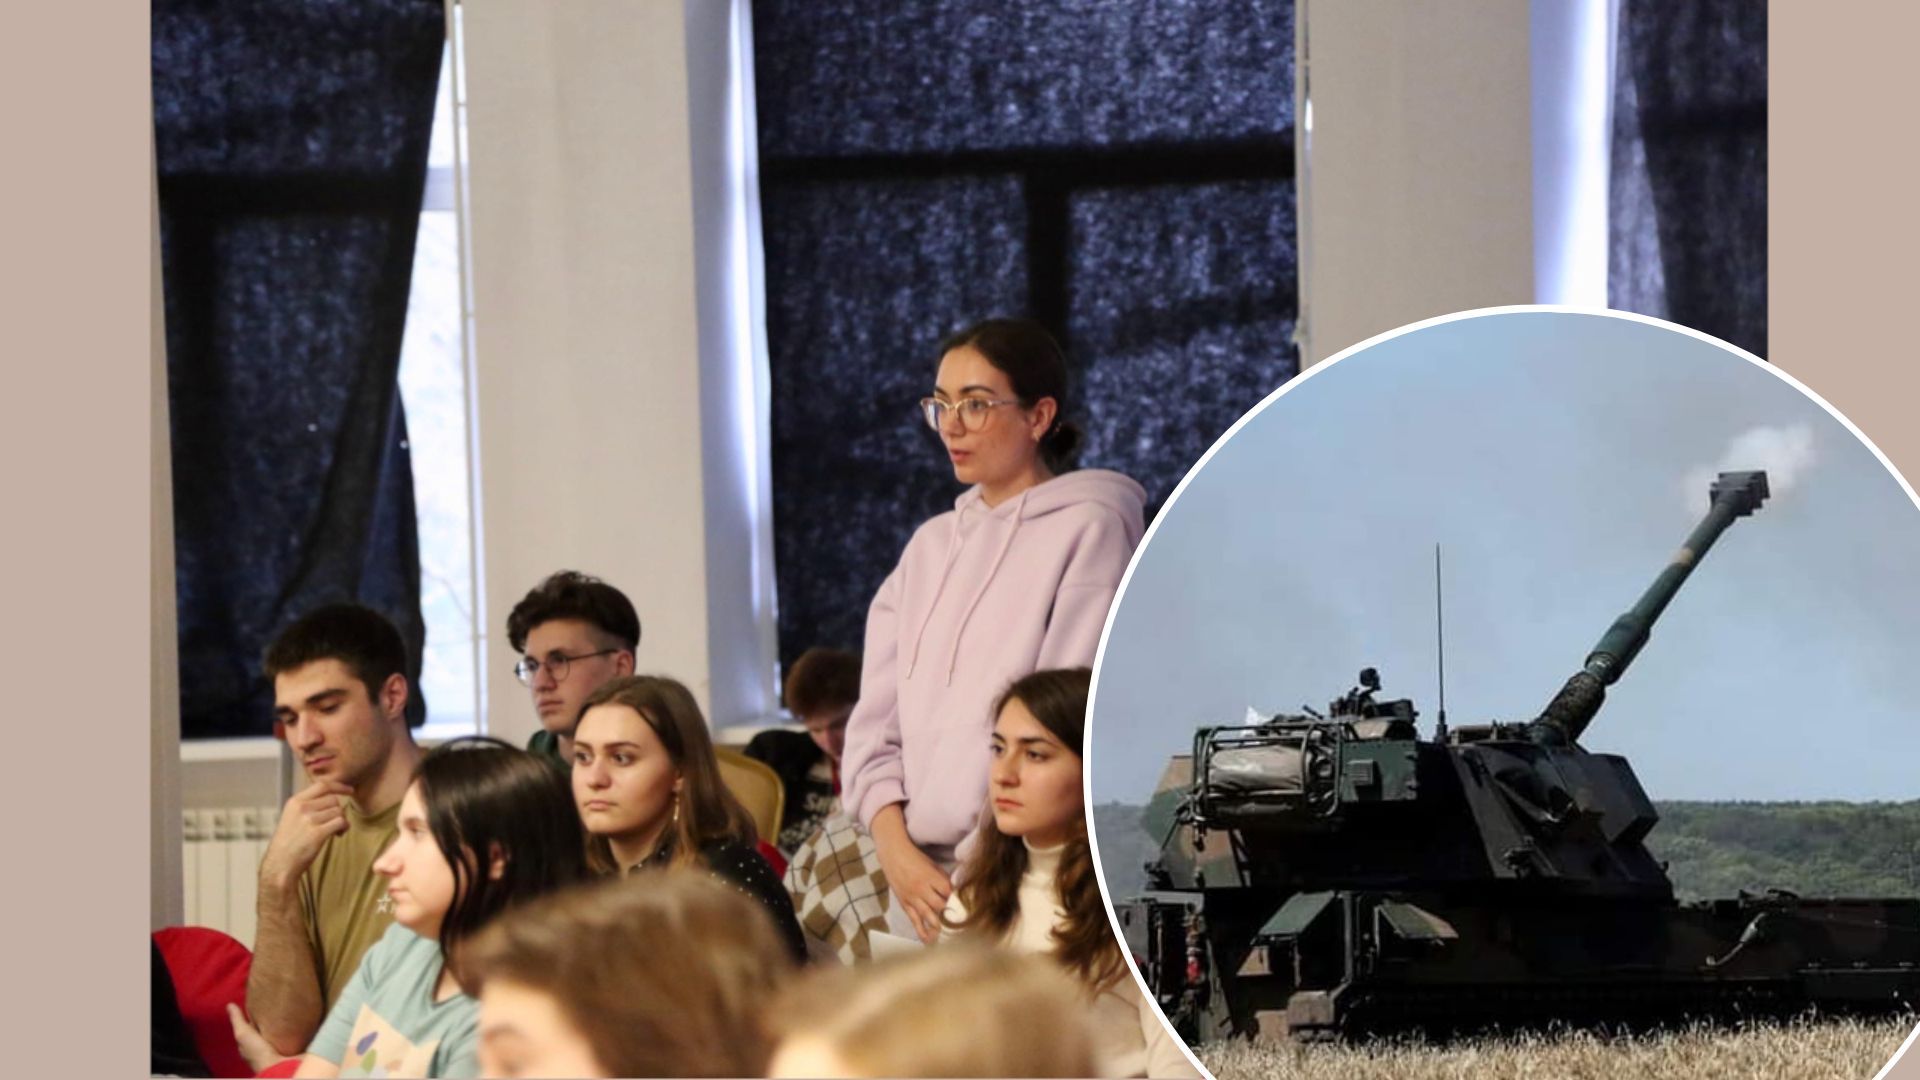 За мирные переговоры выступают уже 44% россиян, особенно молодежь